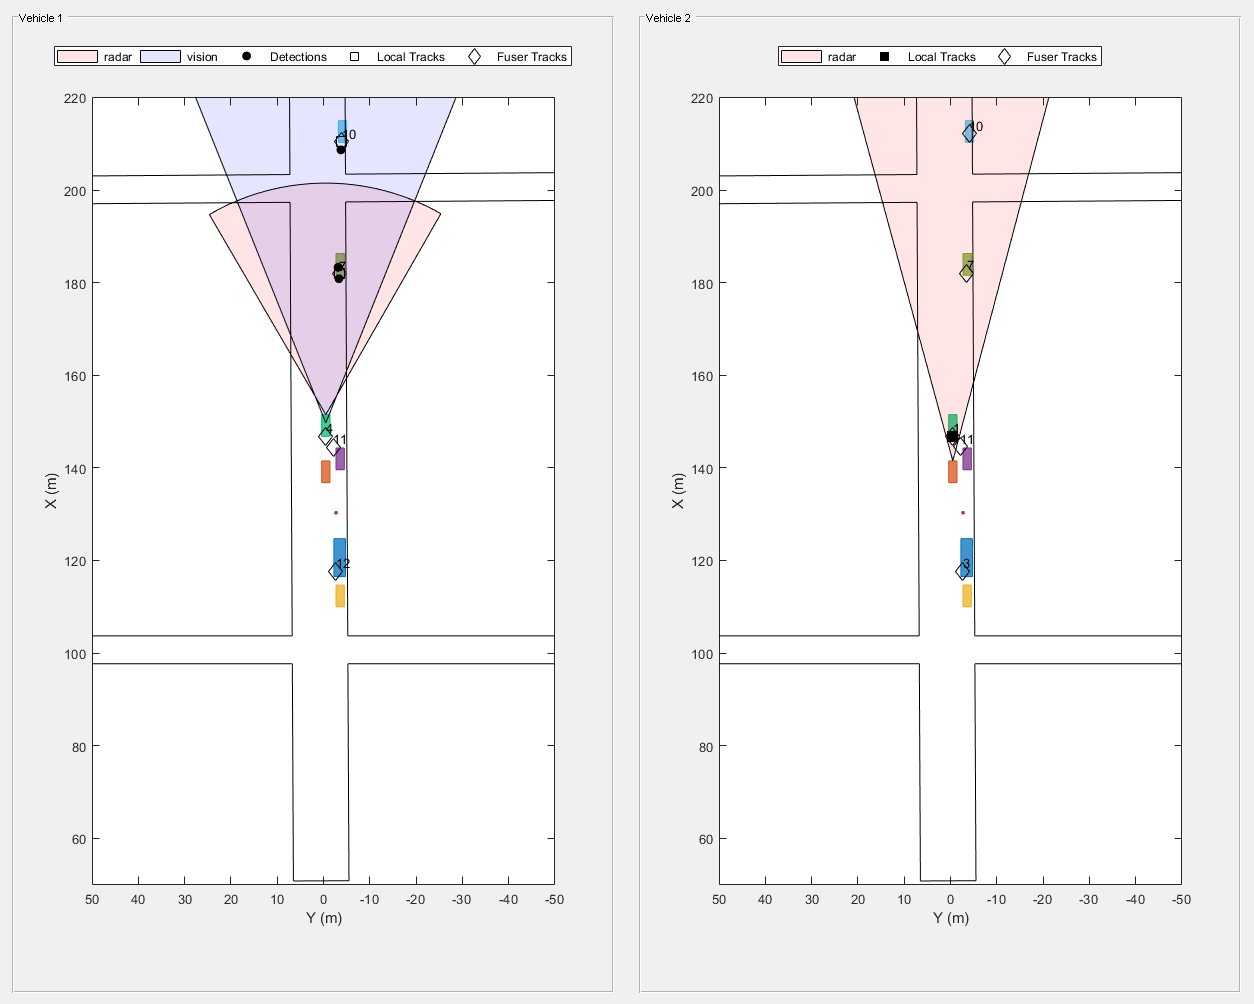 图Snap #4包含2个轴对象和其他uipanel类型的对象。坐标轴对象1与xlabel X (m)， ylabel Y (m)包含11个类型为patch, line, text的对象。其中一条或多条线仅使用标记显示其值。这些对象表示雷达、视觉、探测、本地轨迹、Fuser轨迹。坐标轴对象2与xlabel X (m)， ylabel Y (m)包含8个类型为patch, line, text的对象。其中一条或多条线仅使用标记显示其值。这些对象表示雷达、本地轨迹、Fuser轨迹。